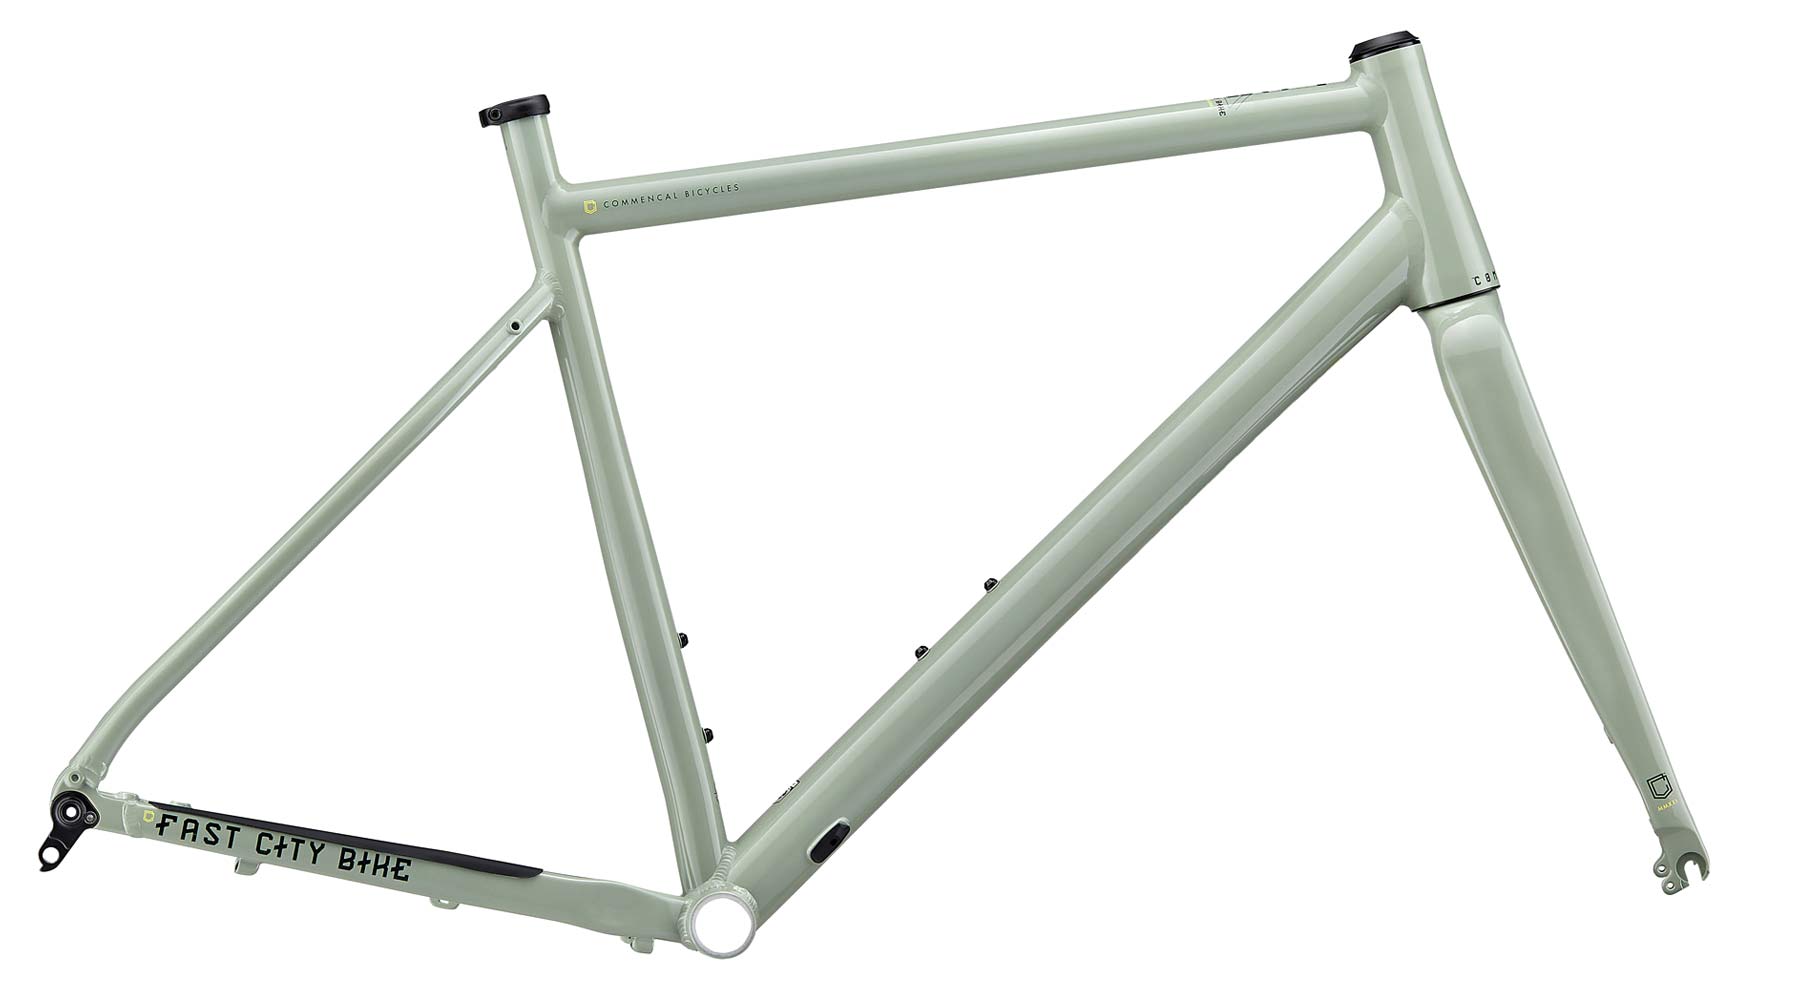 Commencal FCB Gravel project frameset, frame kit option, custom gravel bike build, Heritage green frame